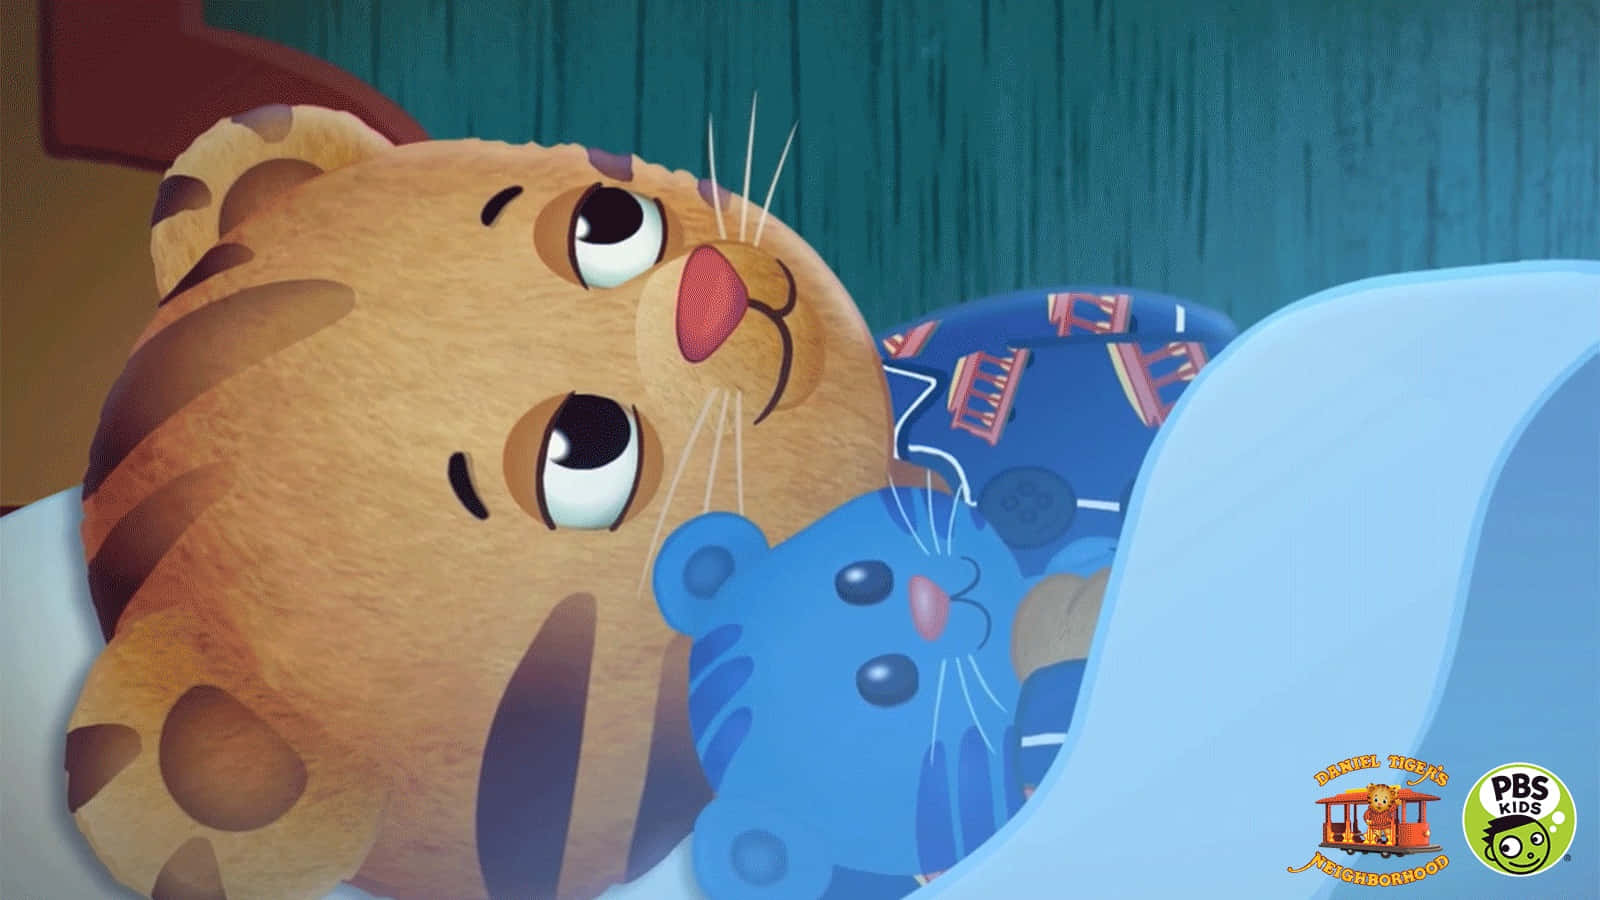 Eintiger Liegt Im Bett Mit Einem Blauen Teddybären.